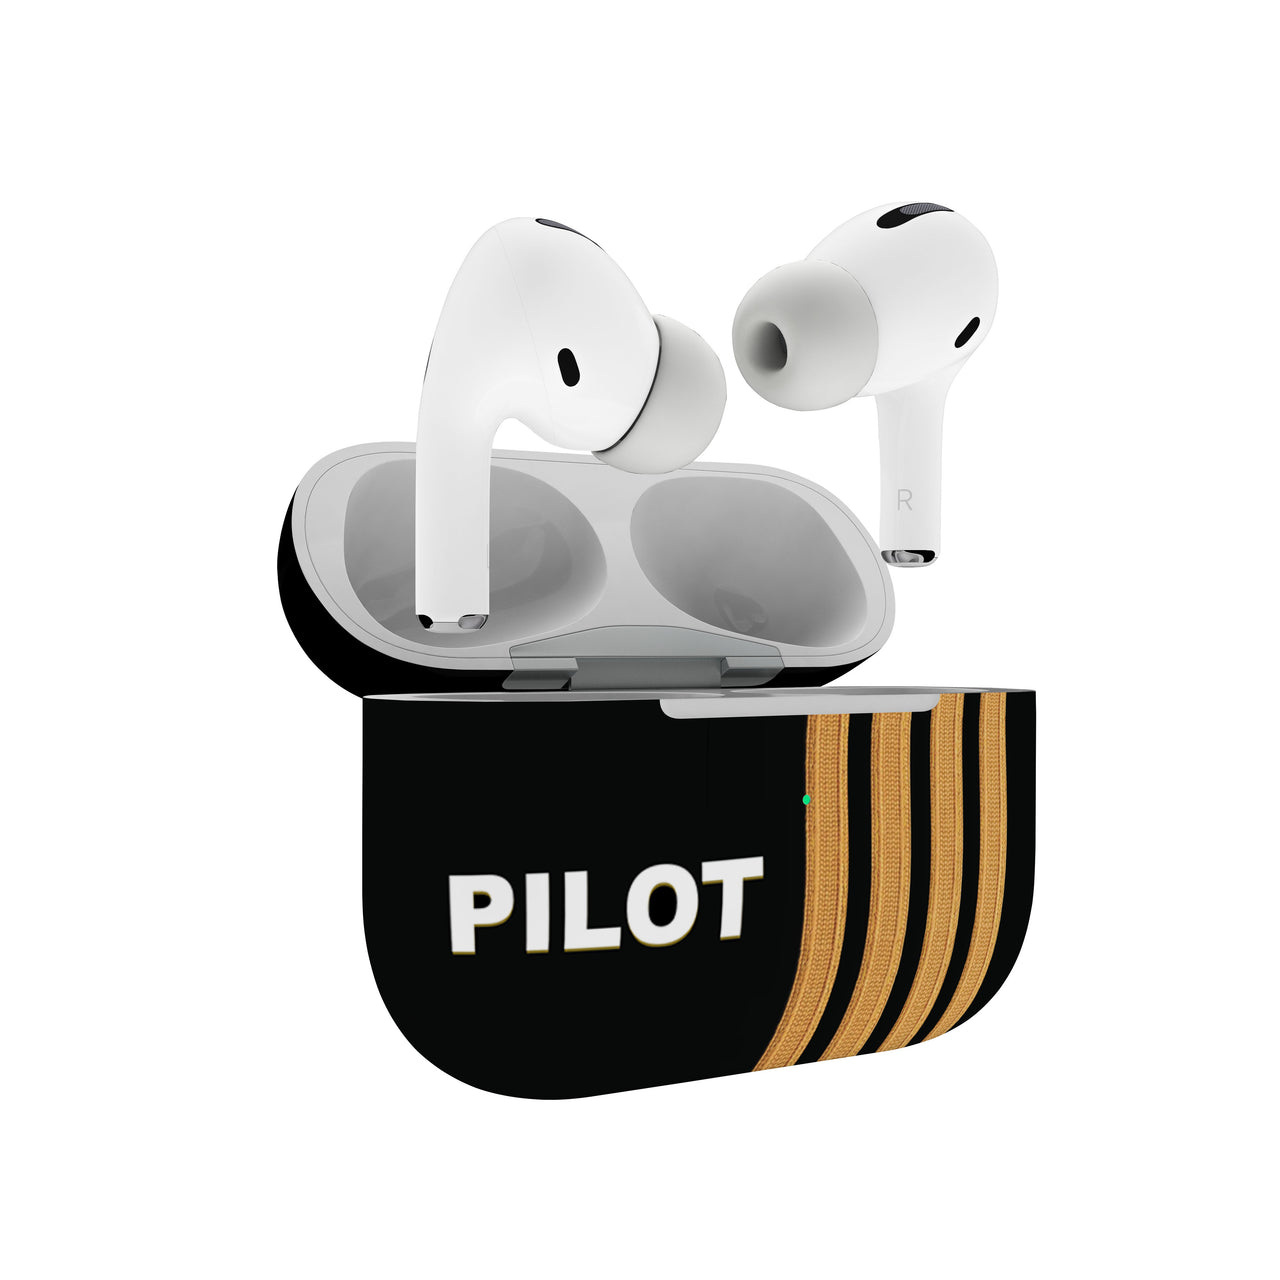 Pilot & Epaulettes (4,3,2 Lines) Designed Airpods "Pro" Cases